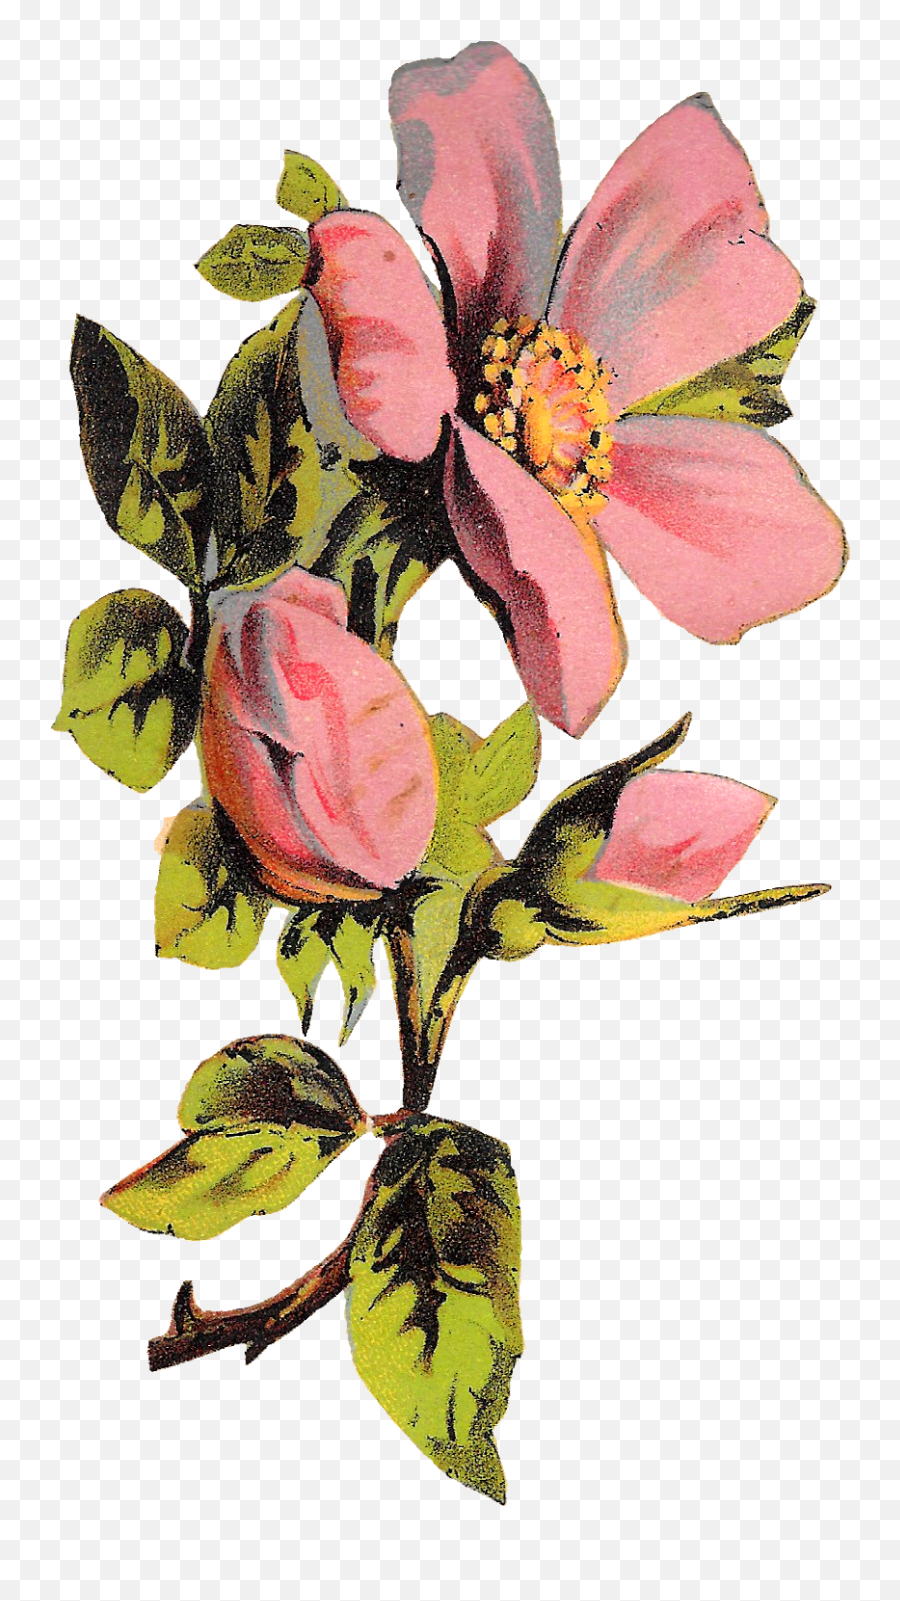 Download Flower Rose Floral Botanical - Transparent Background Floral Illustration Png,Flower Illustration Png